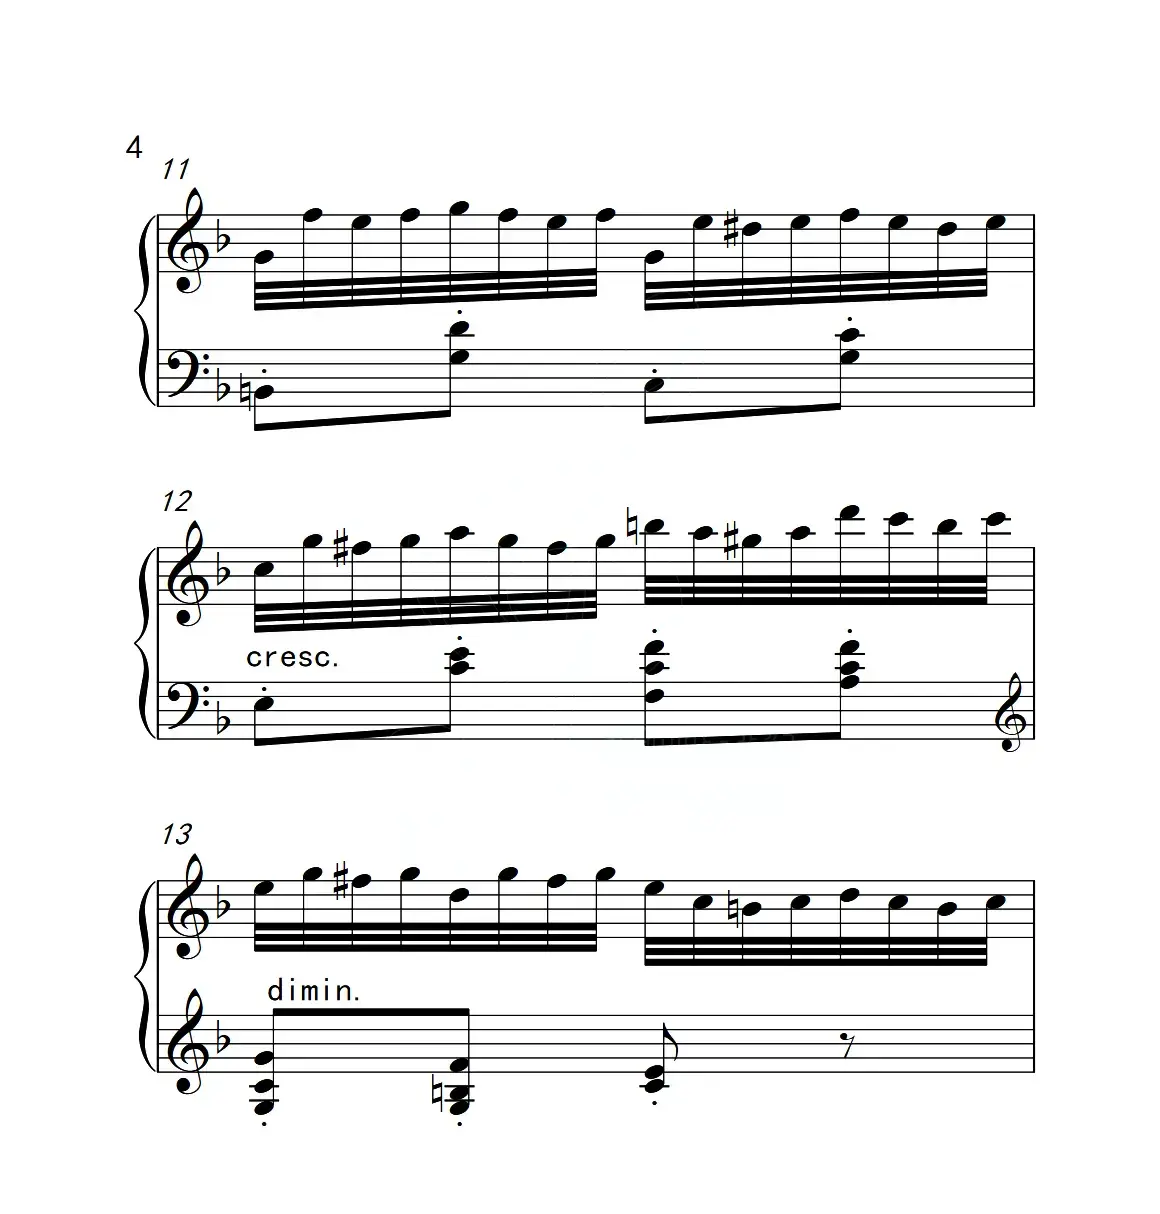 第六级B组 练习曲（中国音乐学院钢琴考级作品1~6级）